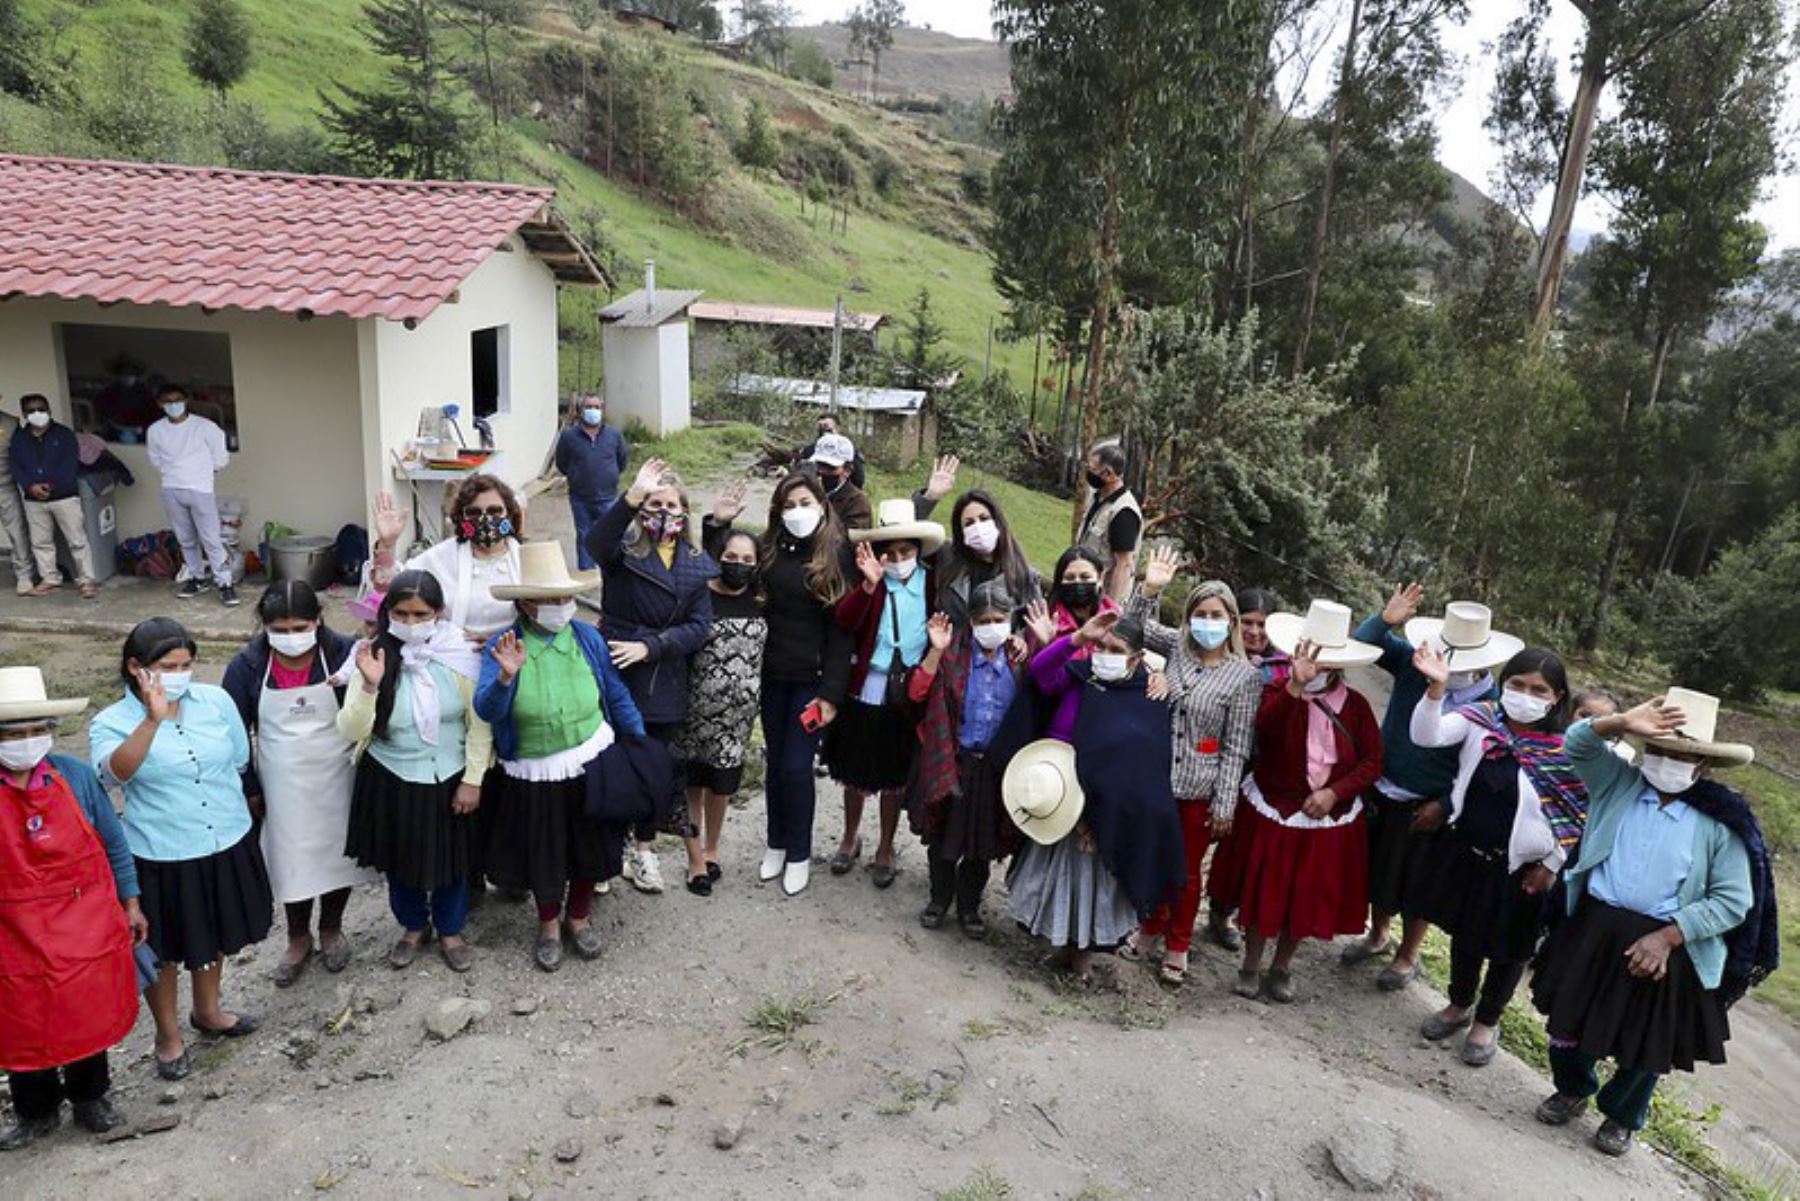 Una delegación de parlamentarios, liderada por la presidenta Maricarmen Alva Prieto, llegó hoy a la ciudad de Cajamarca para participar de la sesión descentralizada del Pleno del Congreso del jueves 28, y cumplir otras actividades como reunirse con autoridades y escuchar las demandas de la población. Foto: Congreso